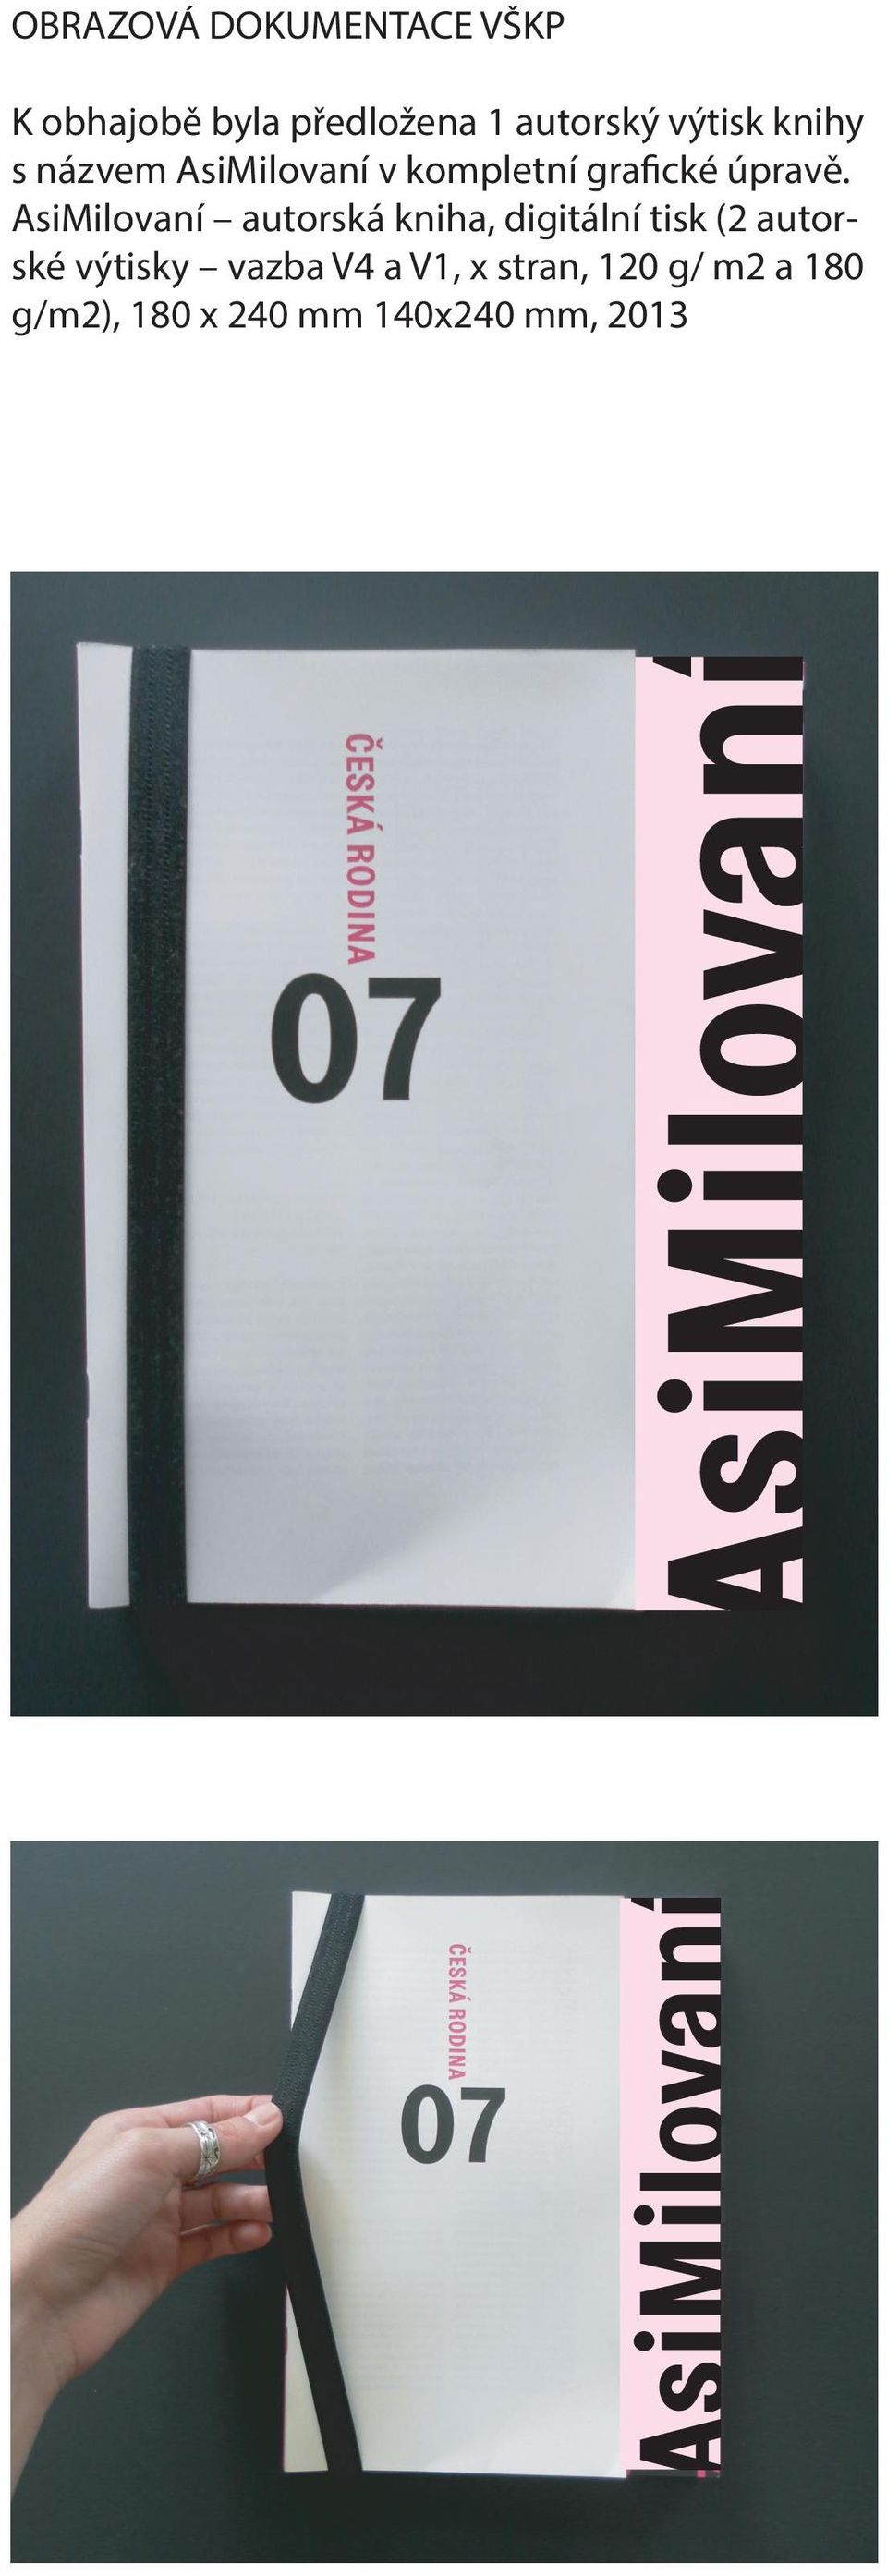 AsiMilovaní autorská kniha, digitální tisk (2 autorské výtisky vazba V4